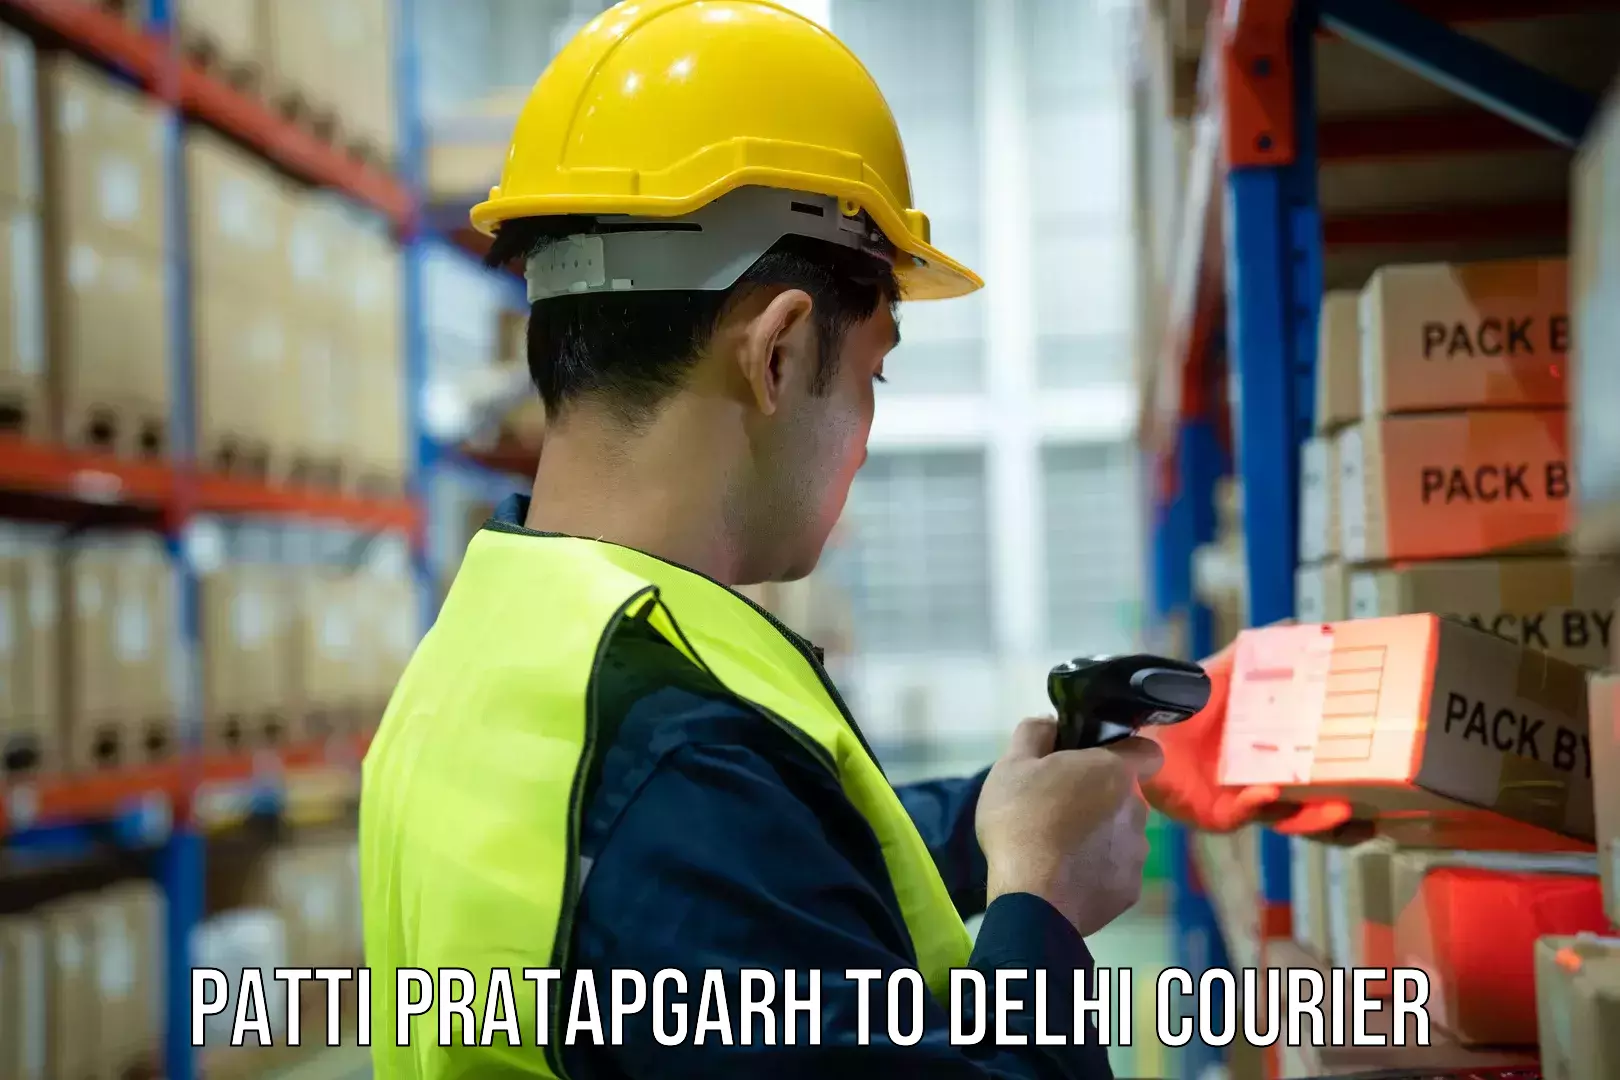 Pharmaceutical courier Patti Pratapgarh to East Delhi